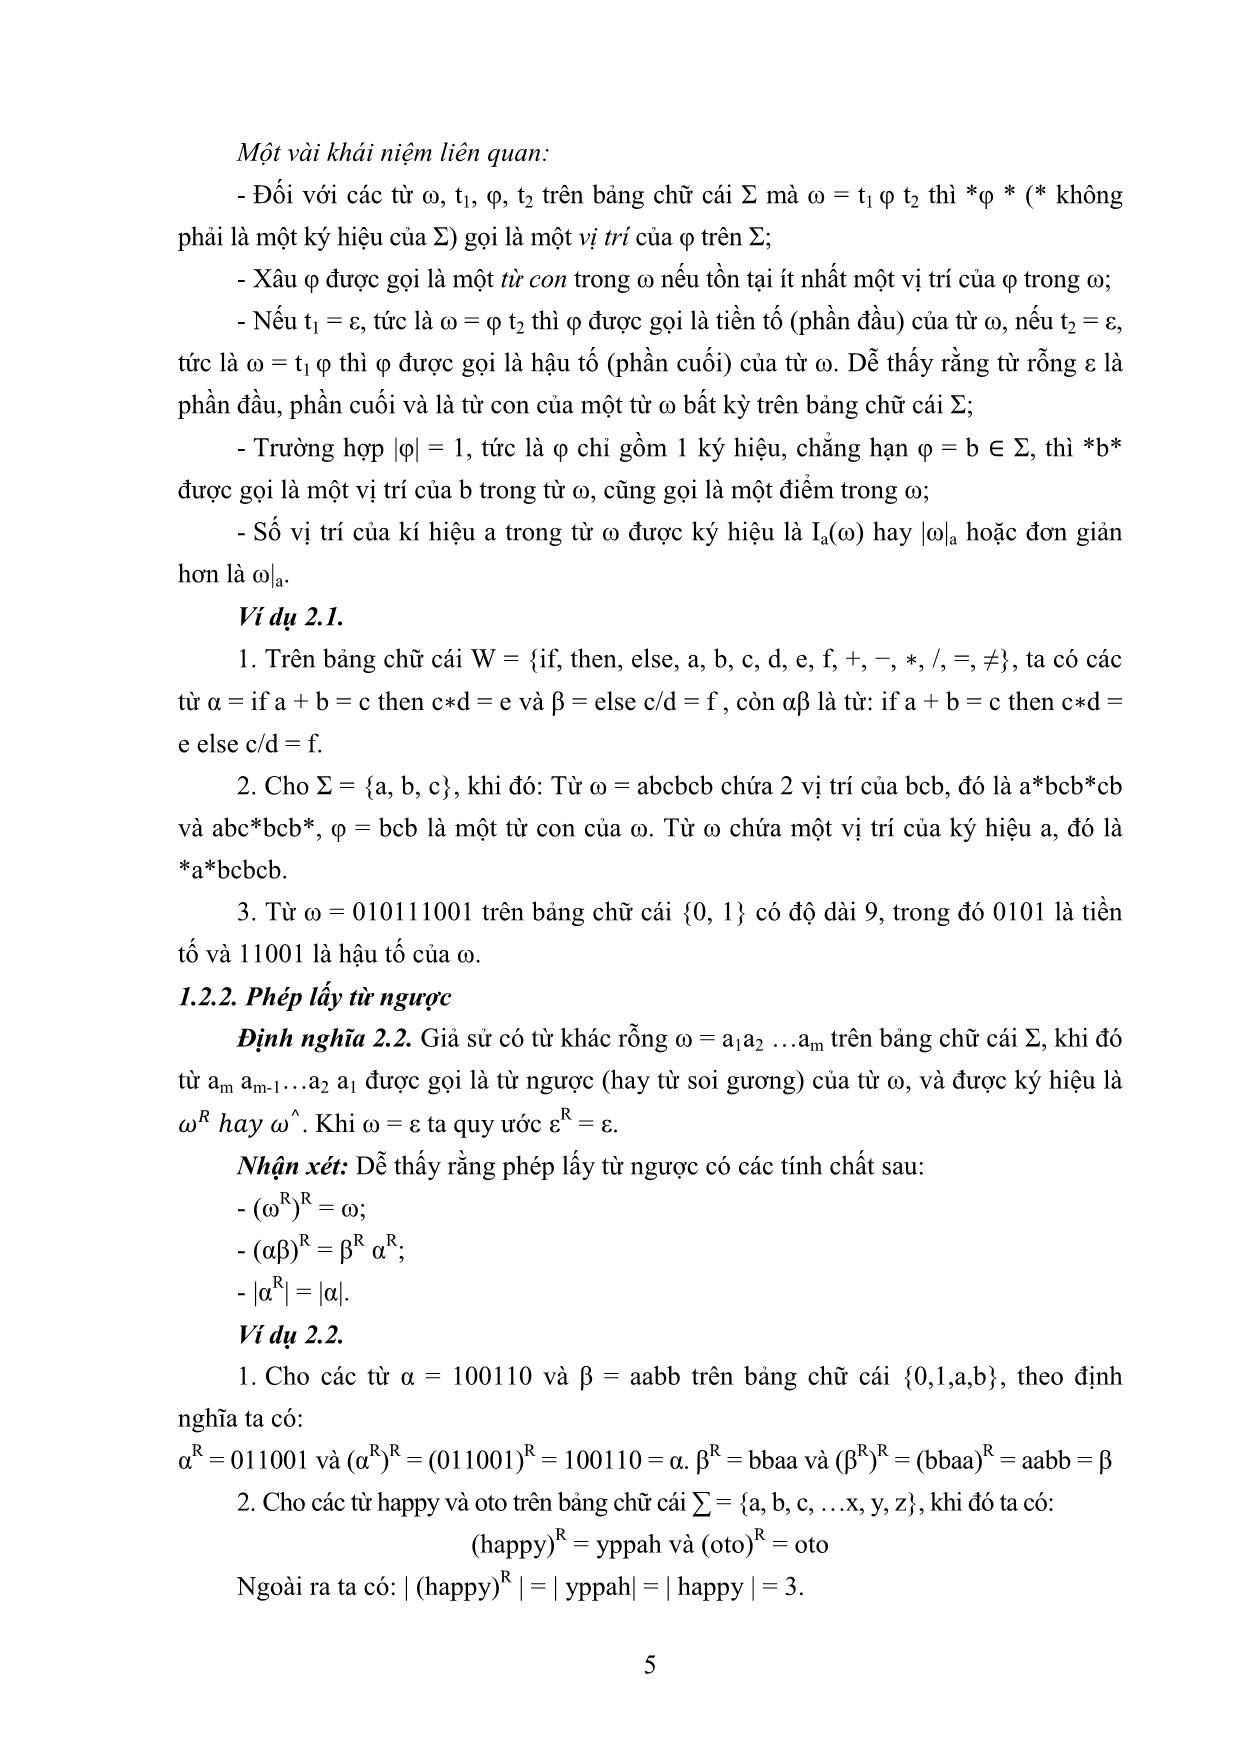 Giáo trình môn Ngôn ngữ hình thức trang 9